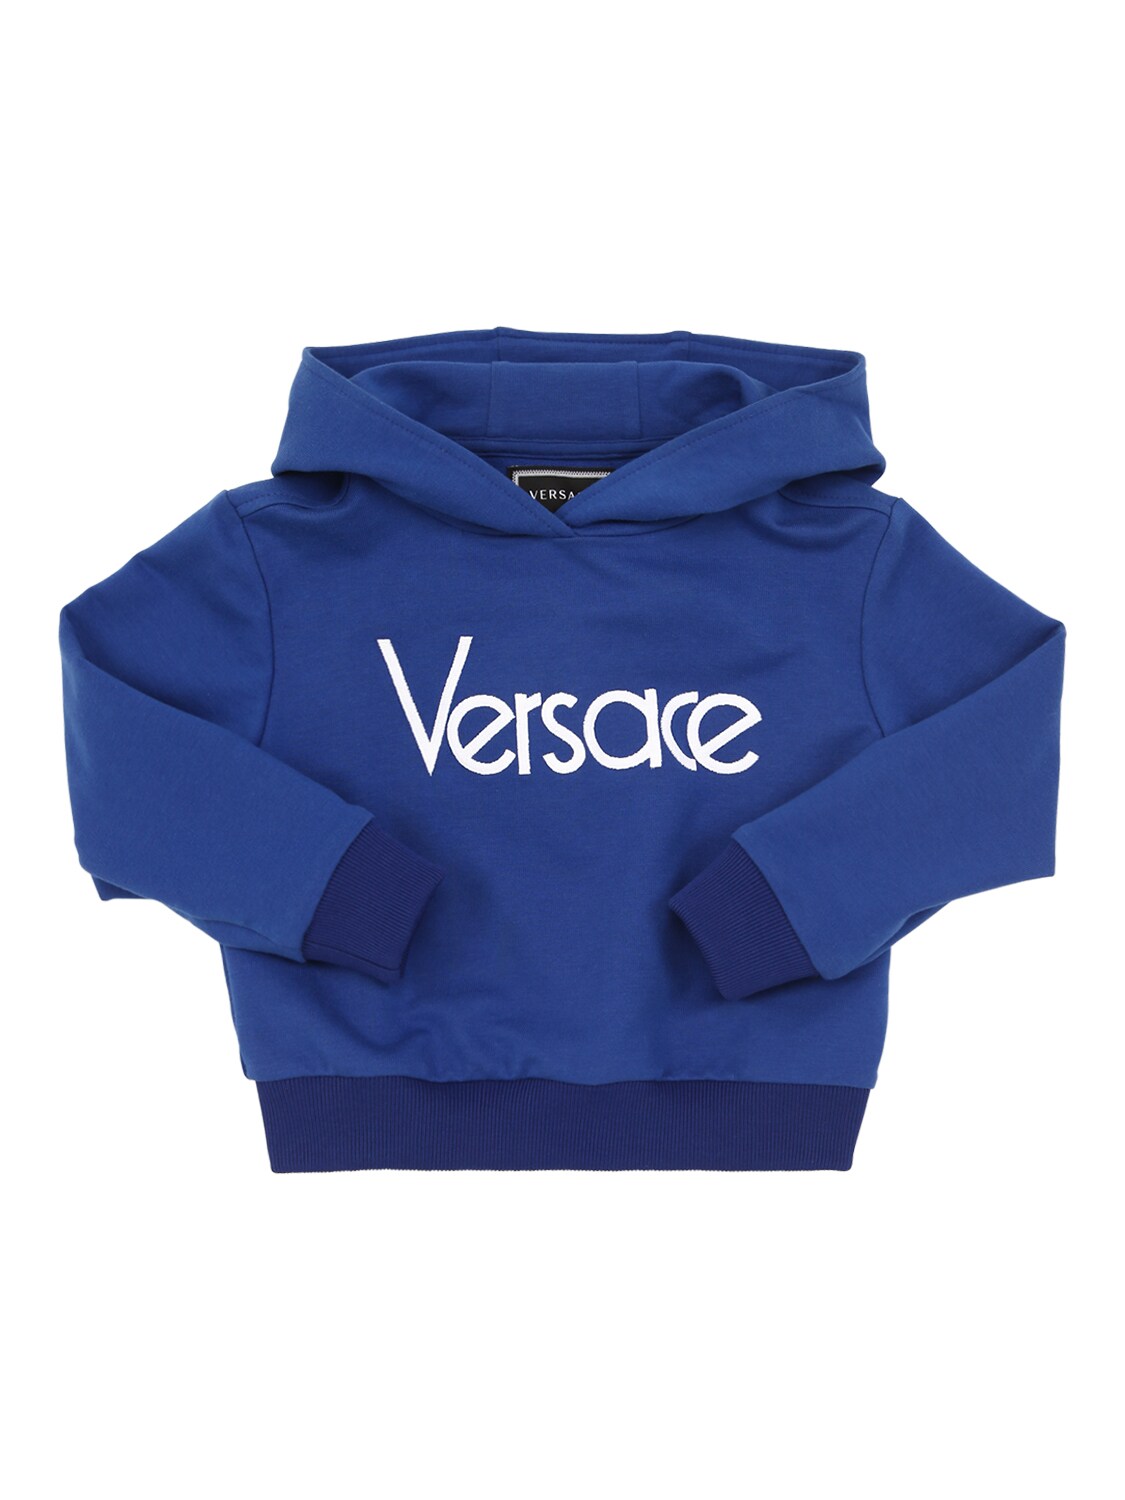 versace hoodie blue